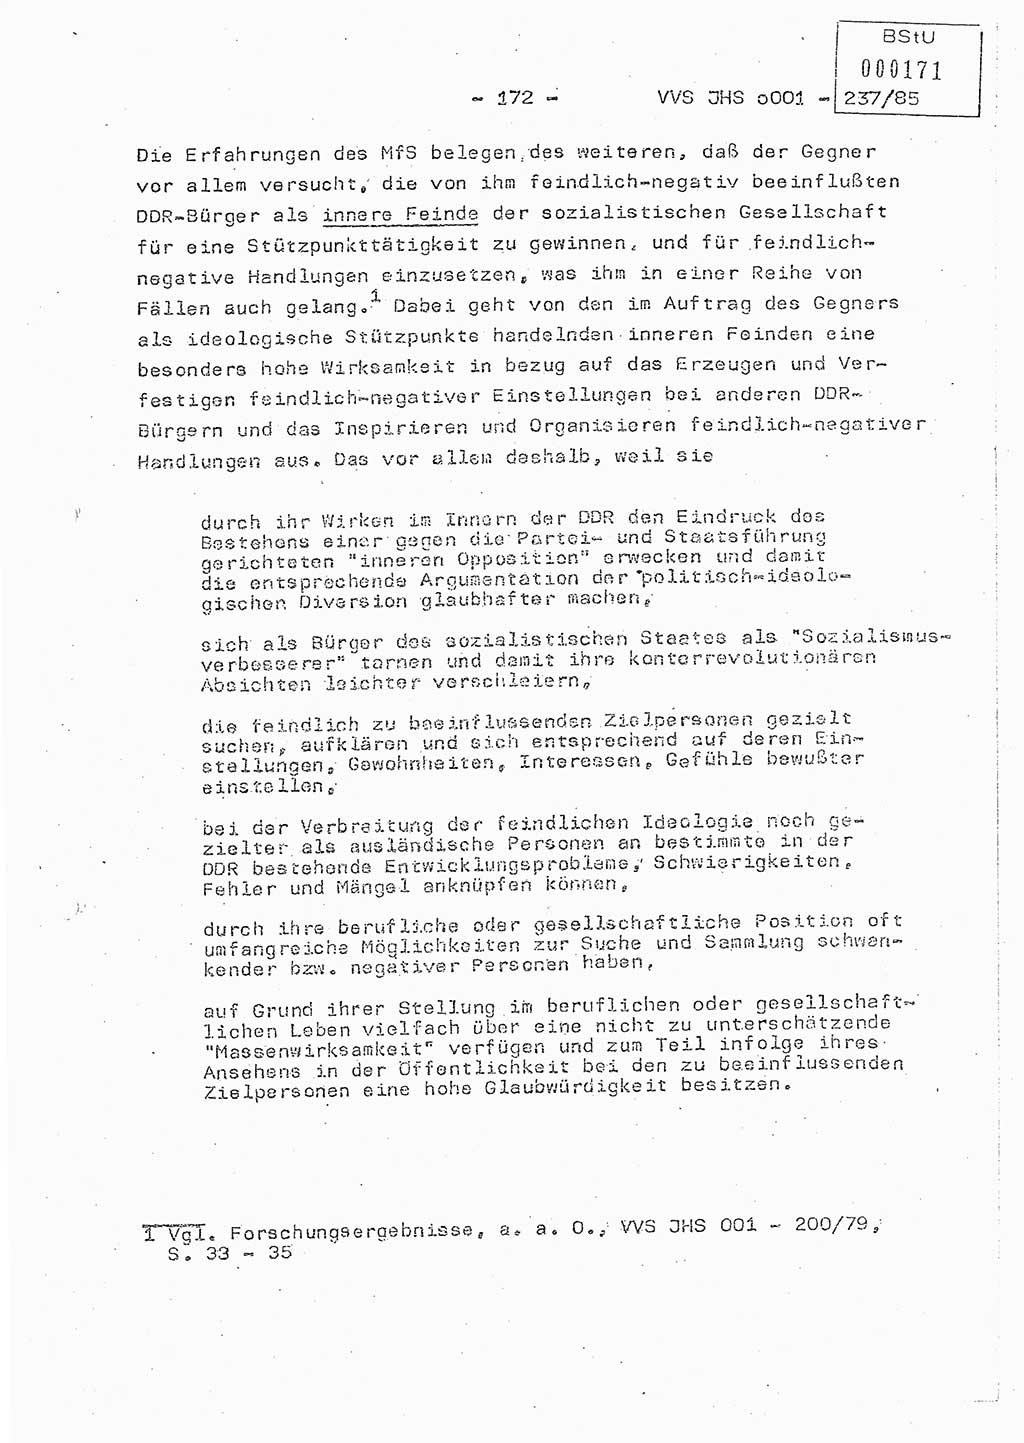 Dissertation Oberstleutnant Peter Jakulski (JHS), Oberstleutnat Christian Rudolph (HA Ⅸ), Major Horst Böttger (ZMD), Major Wolfgang Grüneberg (JHS), Major Albert Meutsch (JHS), Ministerium für Staatssicherheit (MfS) [Deutsche Demokratische Republik (DDR)], Juristische Hochschule (JHS), Vertrauliche Verschlußsache (VVS) o001-237/85, Potsdam 1985, Seite 172 (Diss. MfS DDR JHS VVS o001-237/85 1985, S. 172)